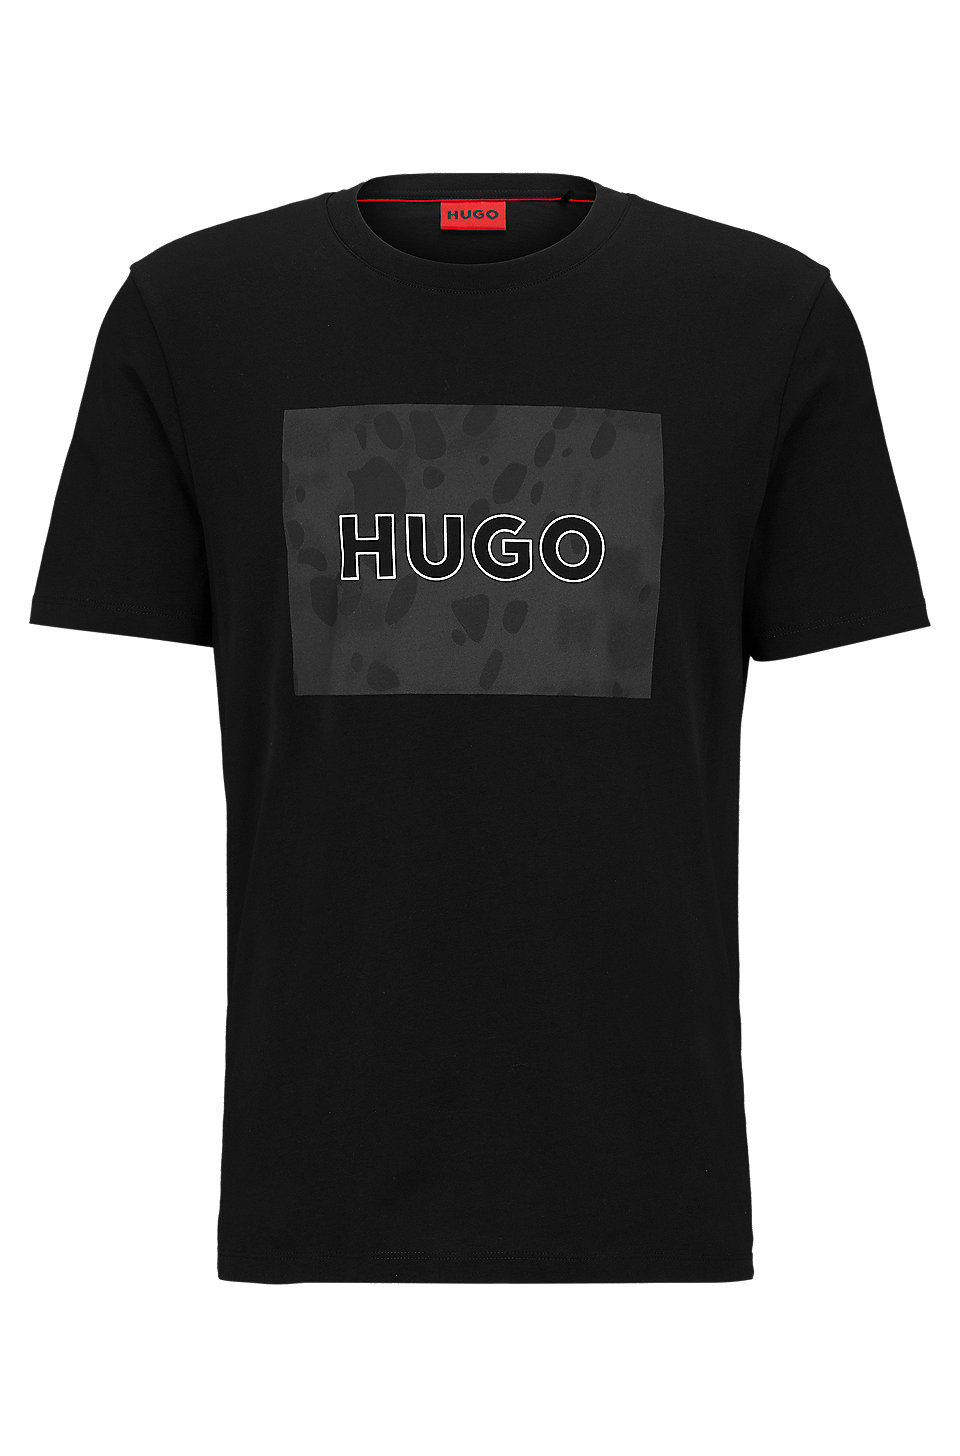 HUGO - Cotton-jersey T-shirt with Dalmatian-print logo artwork